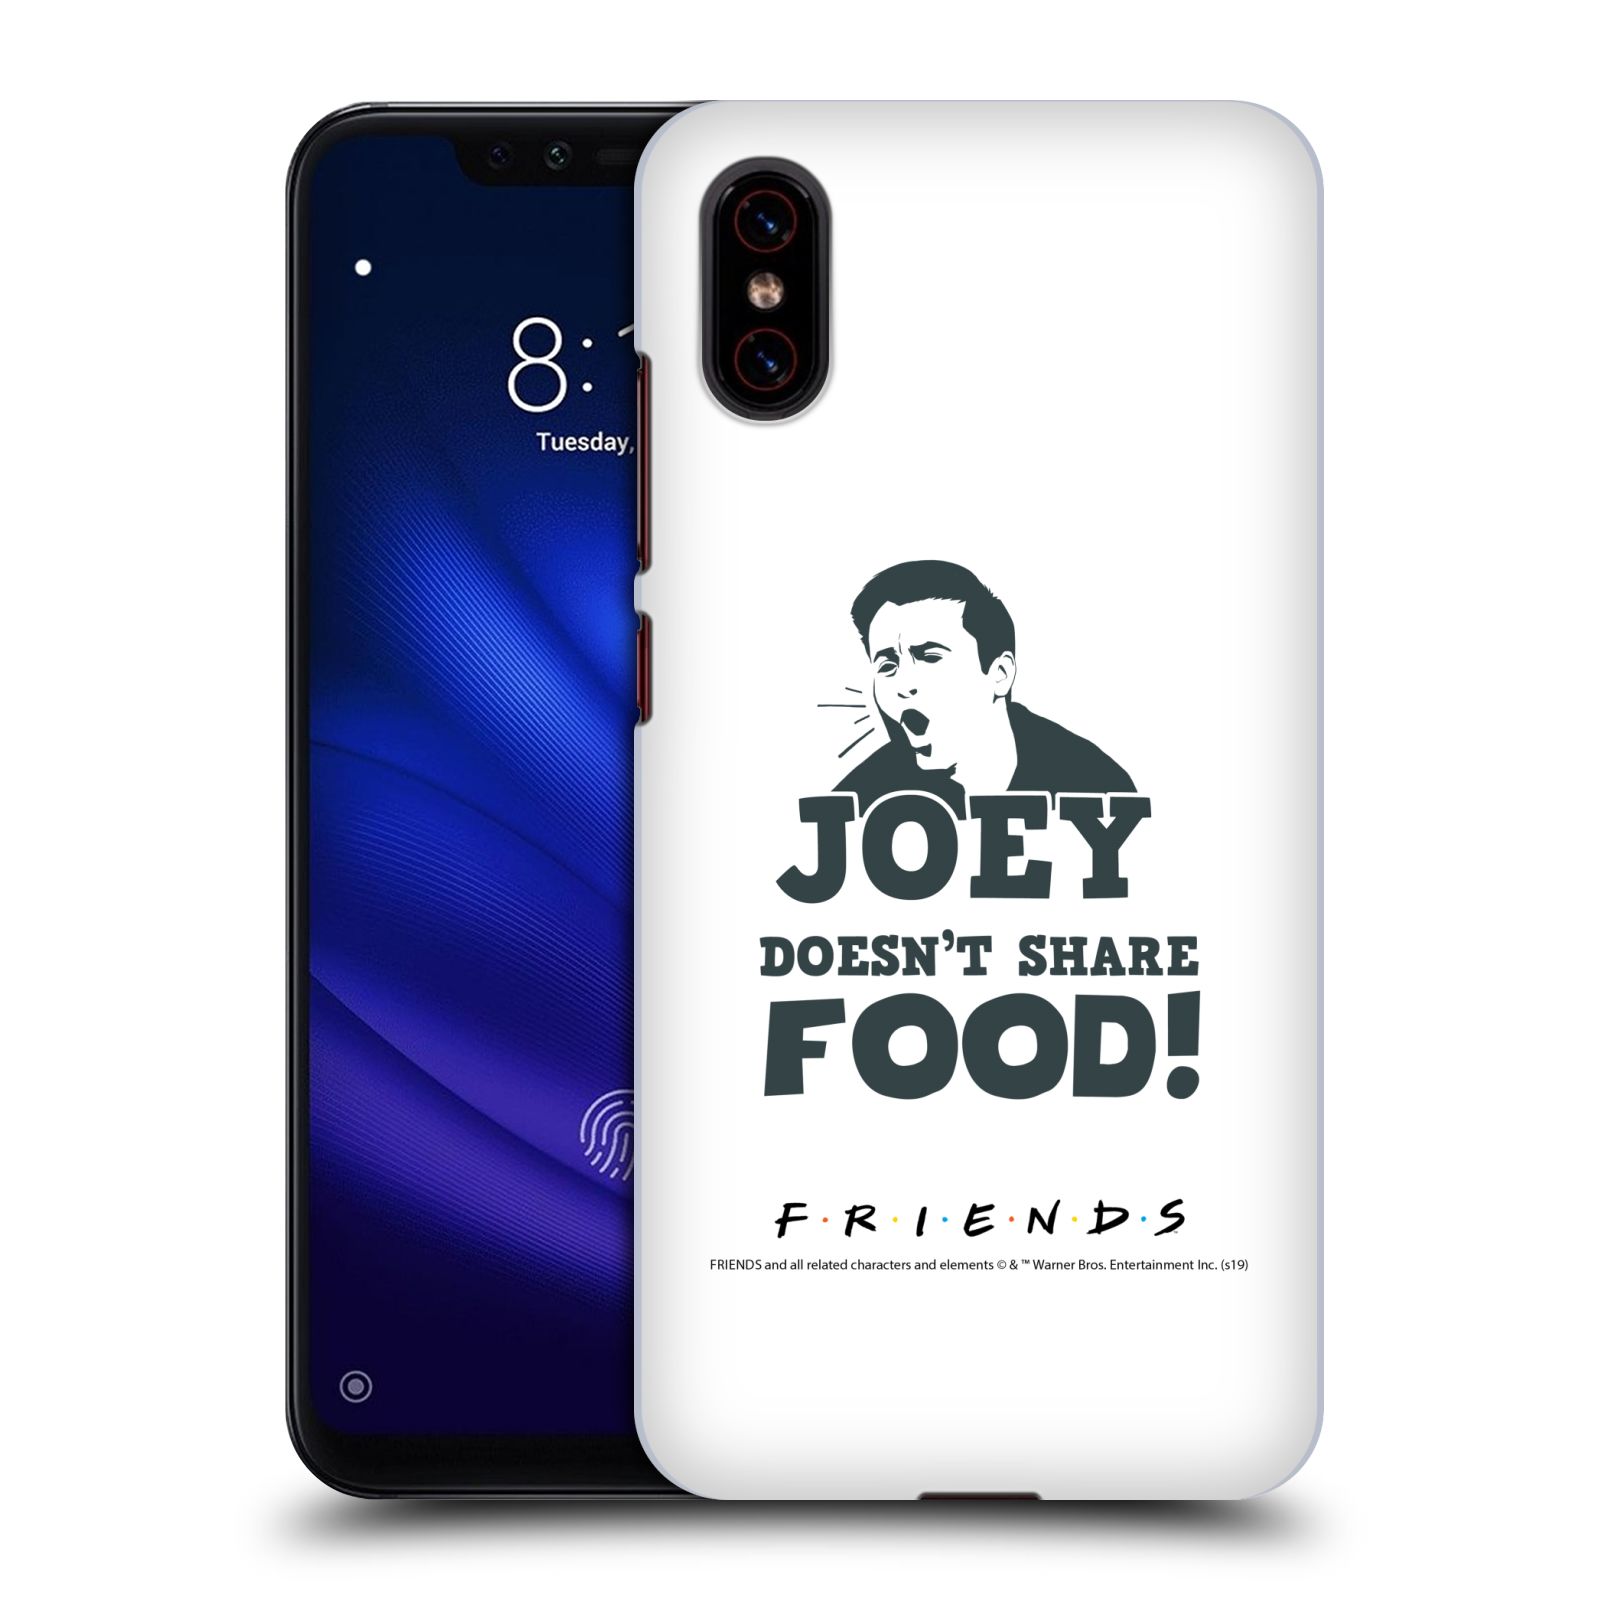 Pouzdro na mobil Xiaomi  Mi 8 PRO - HEAD CASE - Seriál Přátelé - Joey se o jídlo nedělí